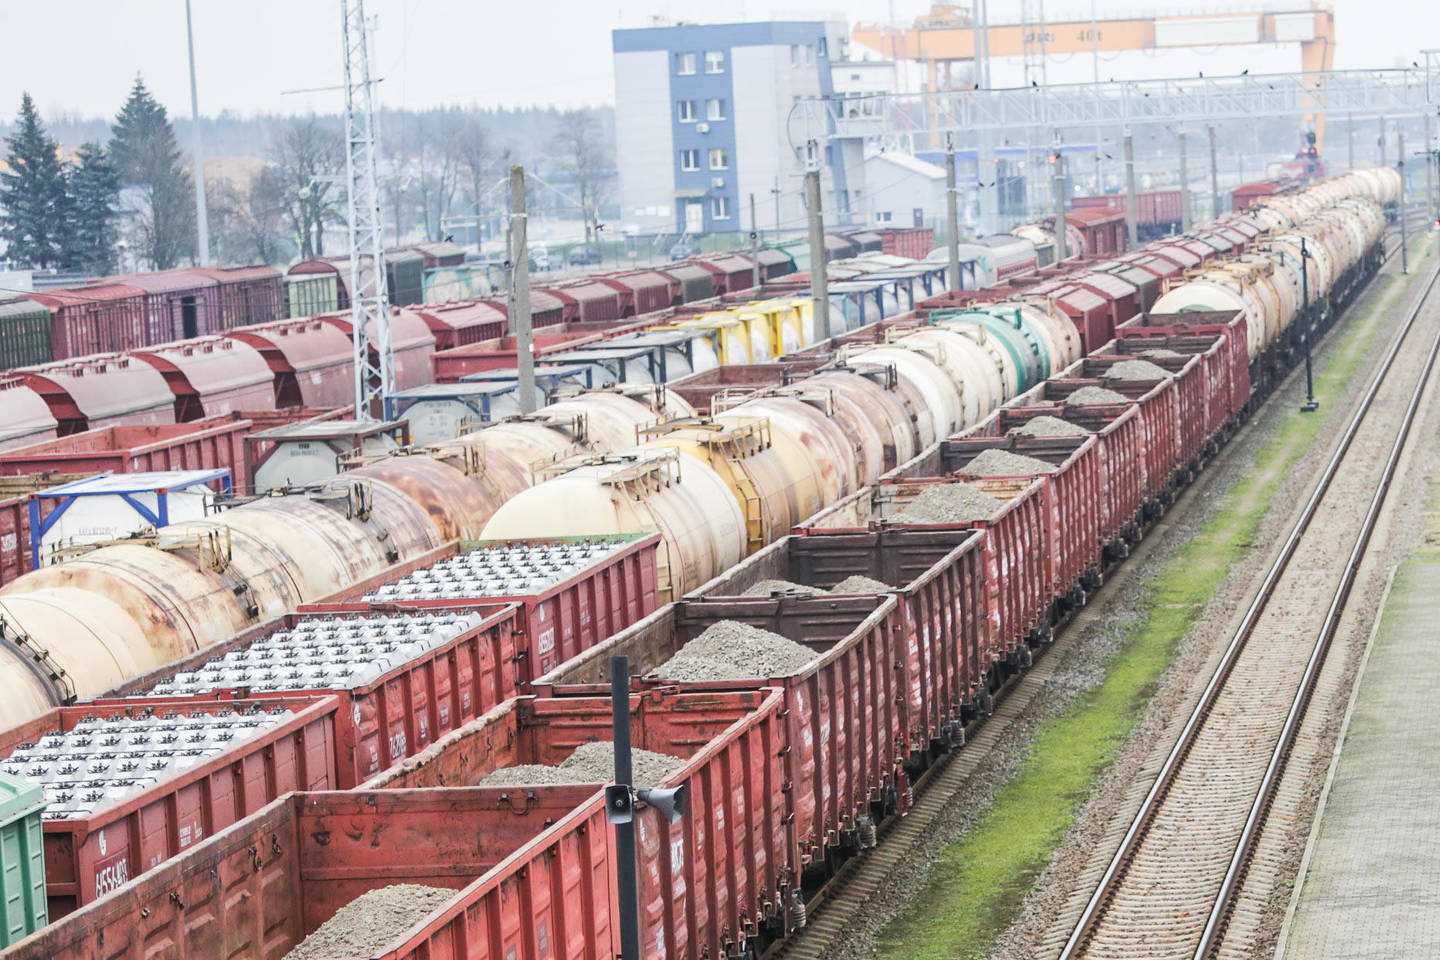   „Lietuvos geležinkeliai“ pirmą kartą tapo krovinių gaenimo lyderiais Baltijos regione.<br> G.Bitvinsko nuotr.  